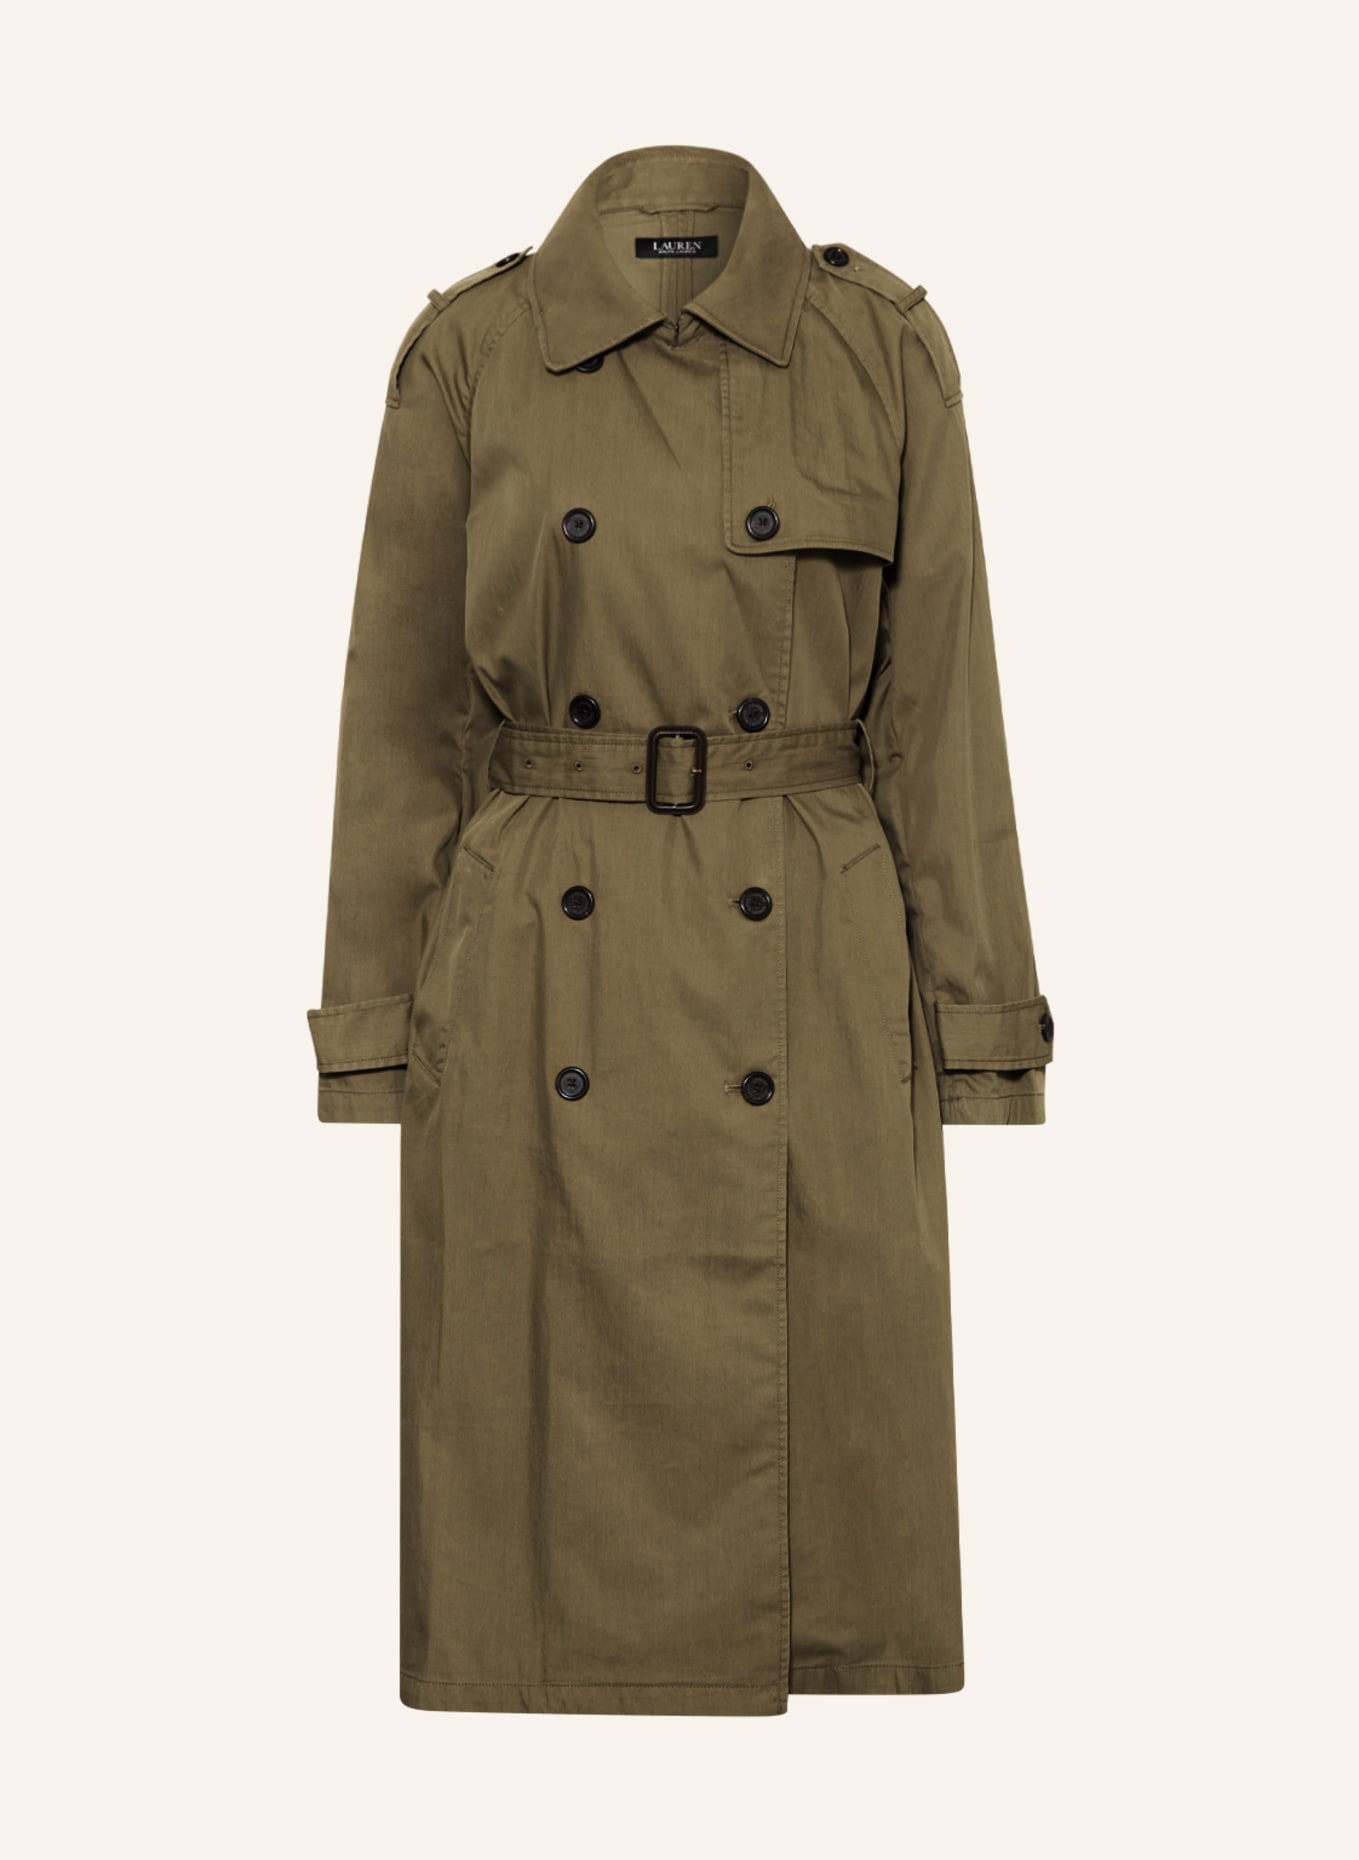 LAUREN RALPH LAUREN Trench coat, Color: OLIVE (Image 1)